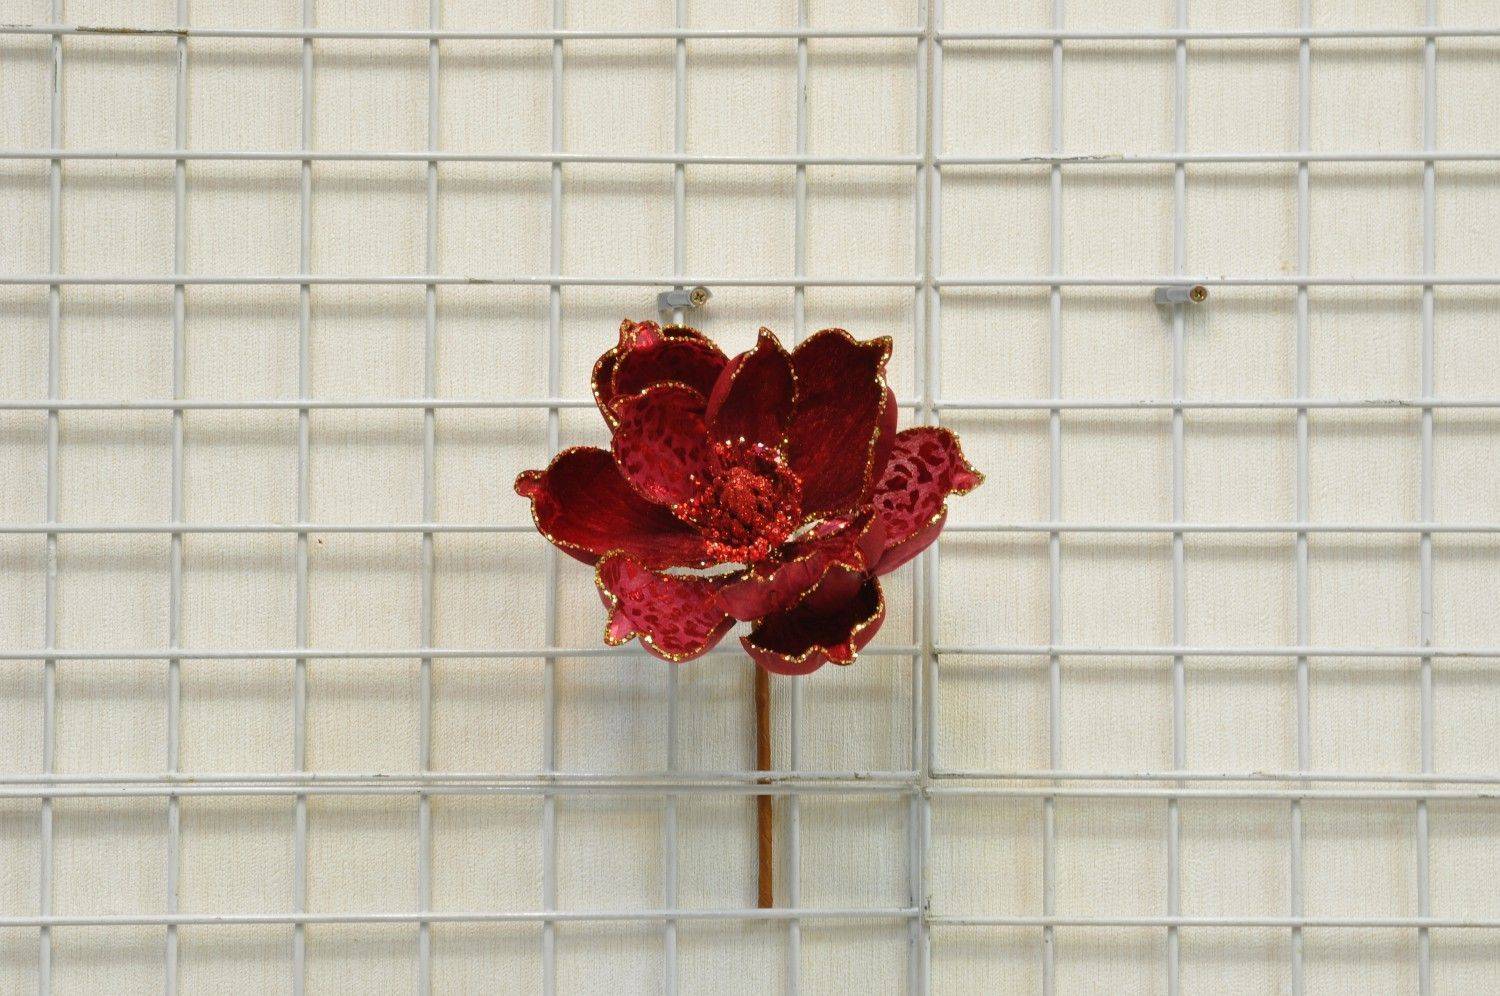 紅色斑紋洋芋蘭花